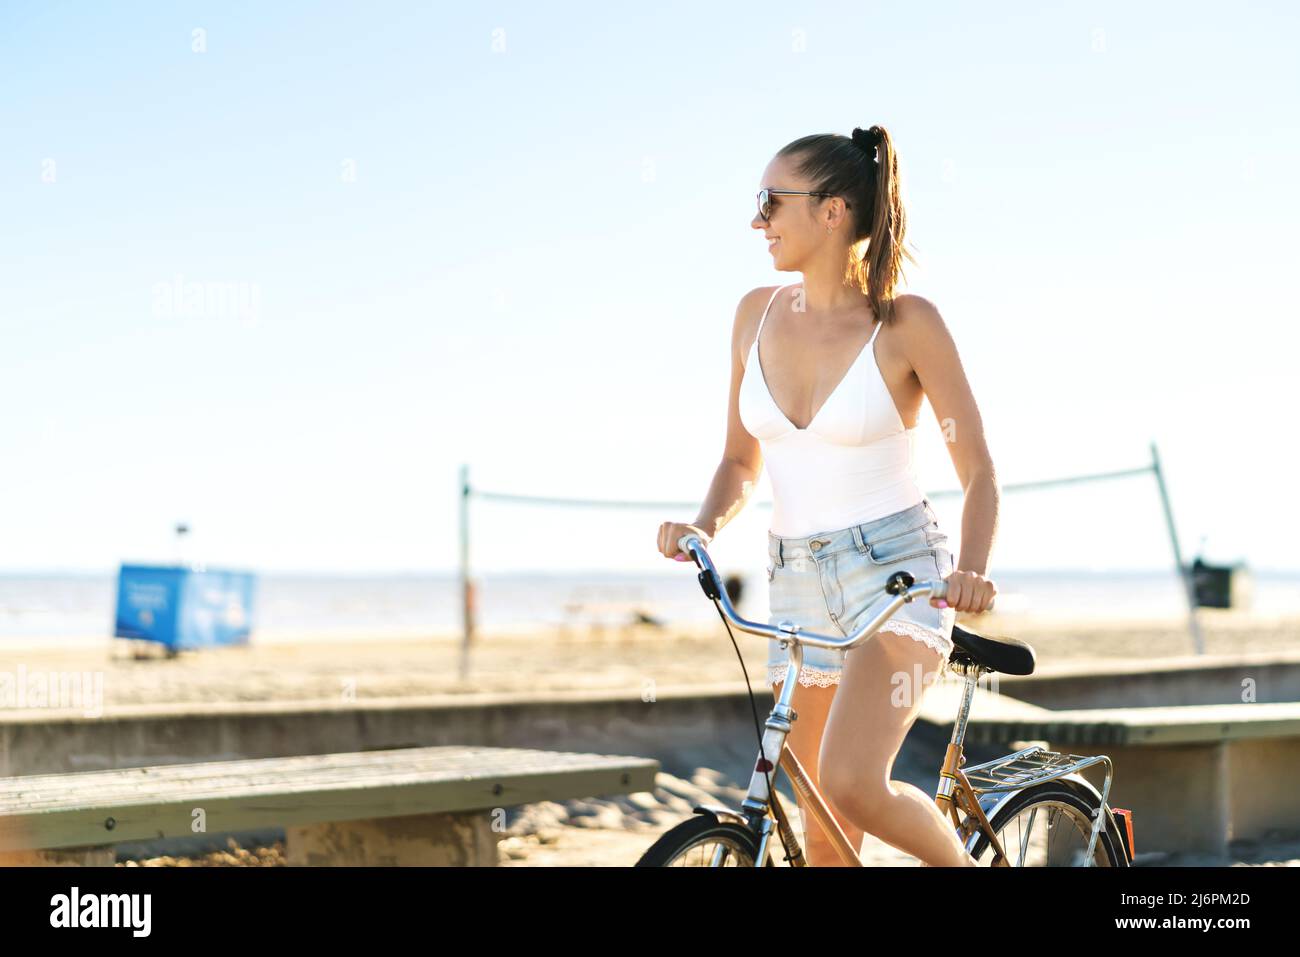 Bicicleta y la playa. Mujer en bicicleta en un paseo marítimo con una bicicleta retro vintage. Bonita ciclista femenina disfrutando de una sensación de verano feliz. Foto de stock